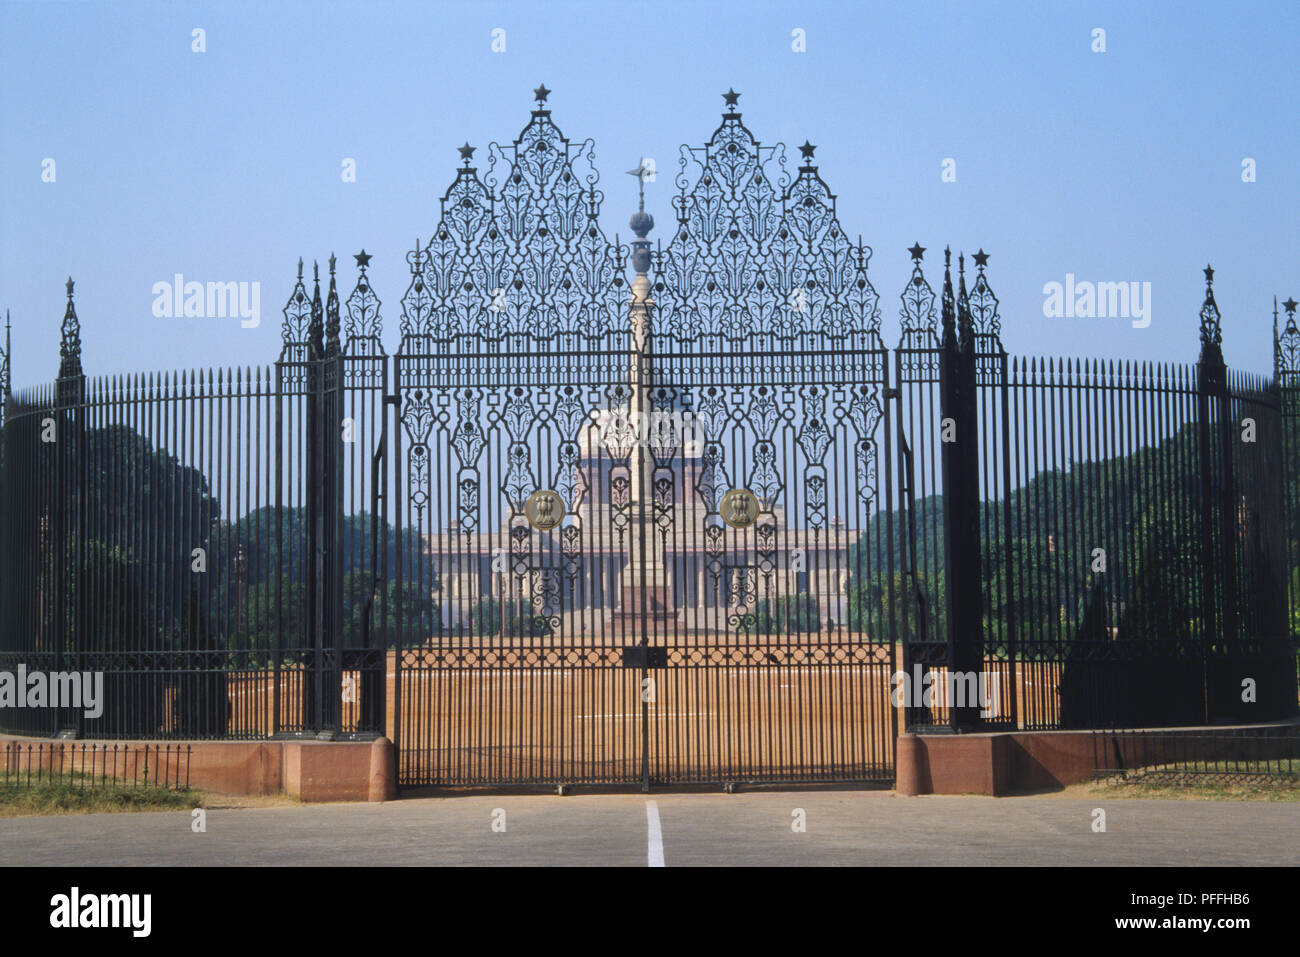 India, New Delhi, Rashtrapati Bhavan, the President of India's official residence, seen through Edwin Lutyen's ornate iron gates. Stock Photo